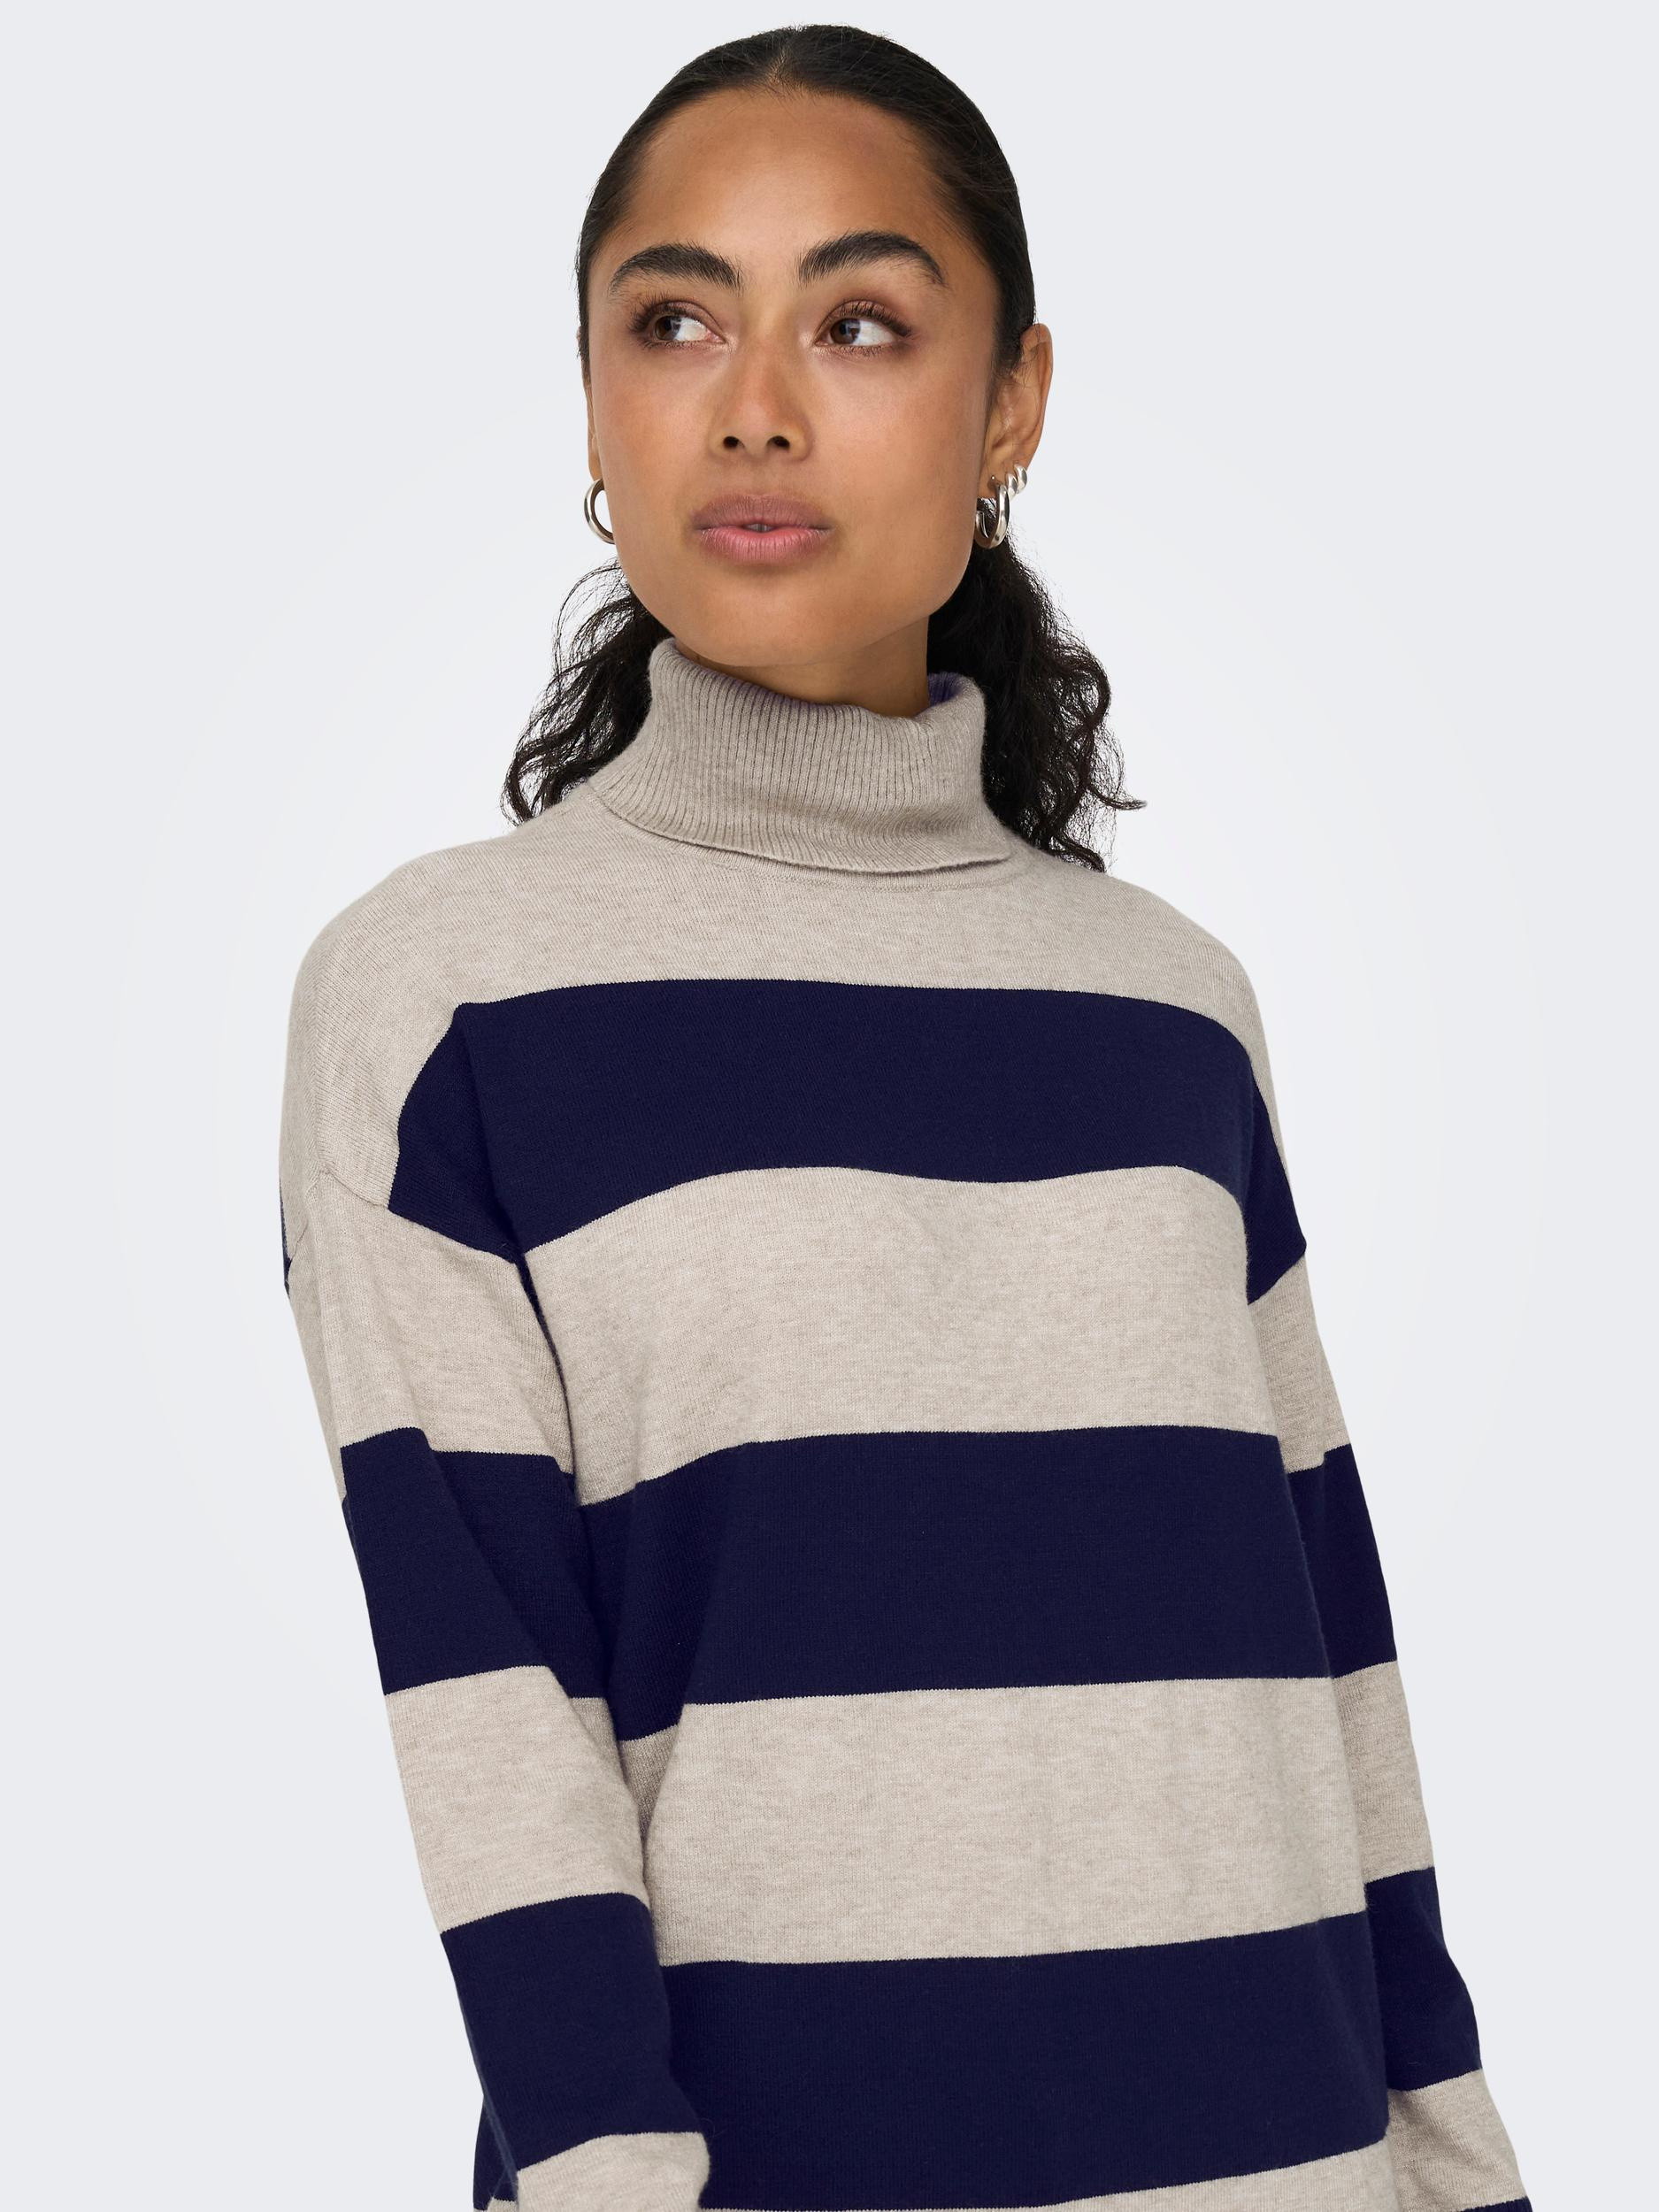 Only - Striped knit turtleneck, Light Beige, large image number 5